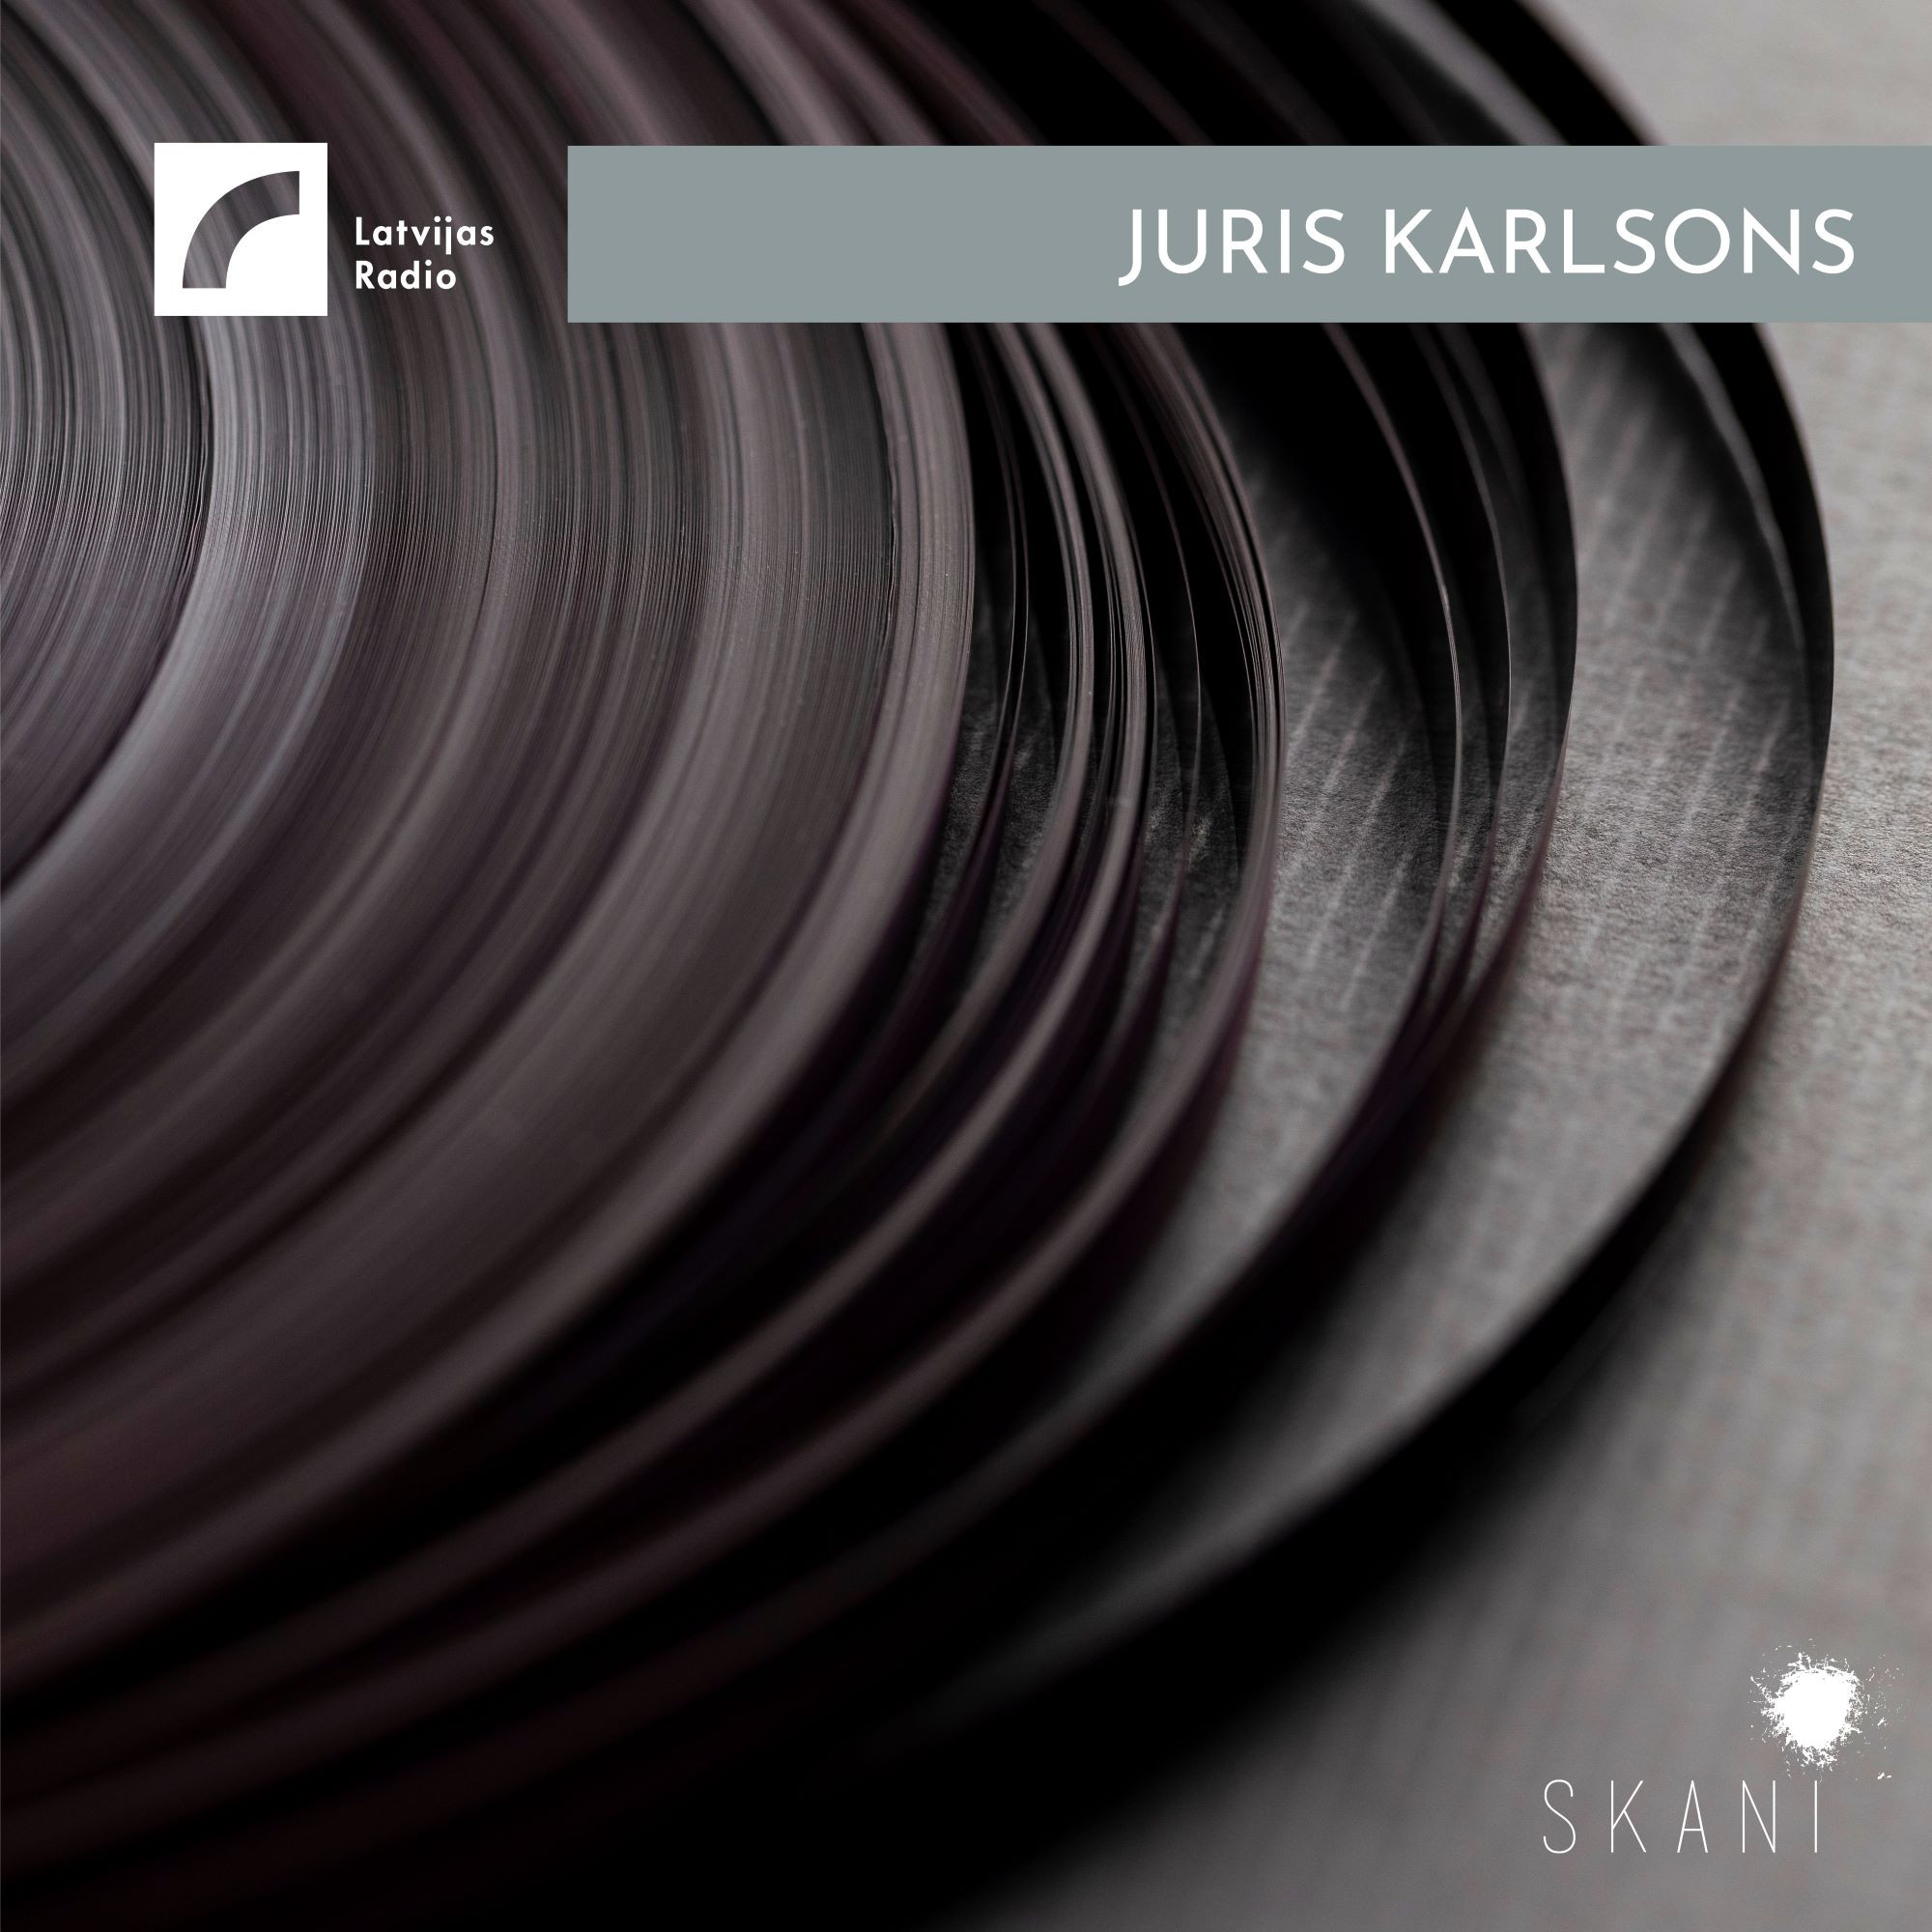 Latvian Radio Archive: Juris Karlsons